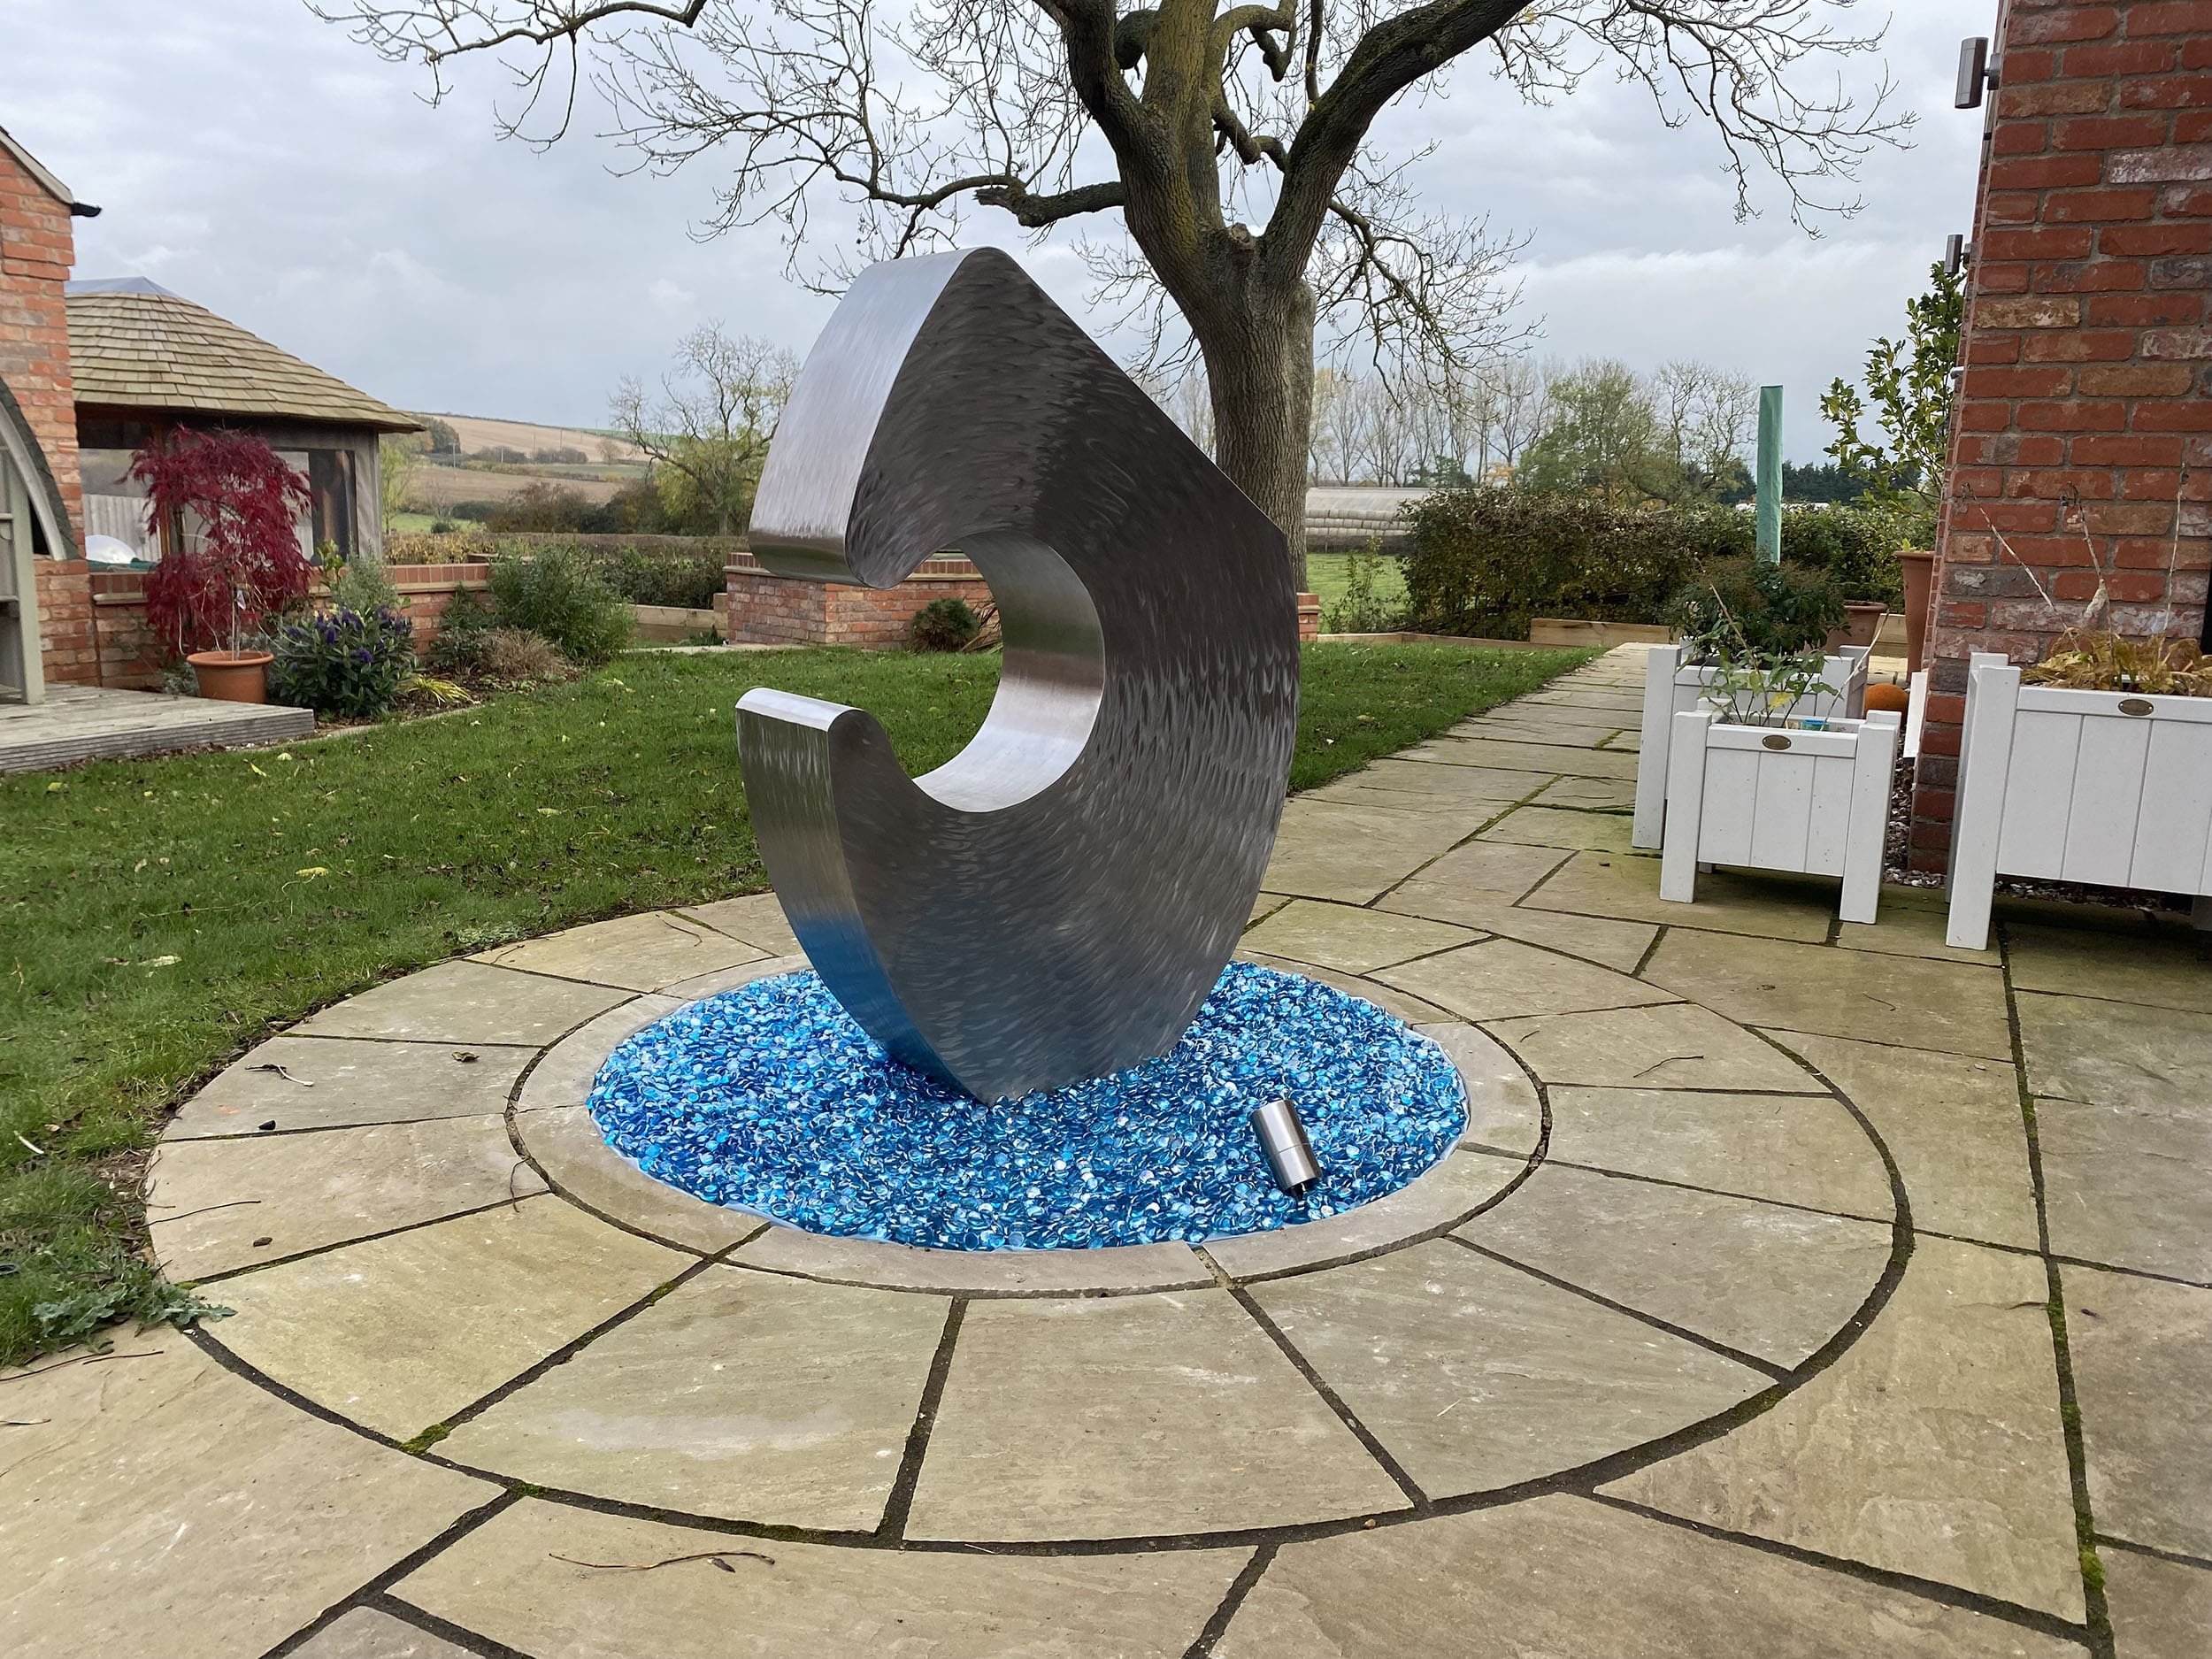 enigma-II-stainless-steel-garden-sculpture-3.jpg